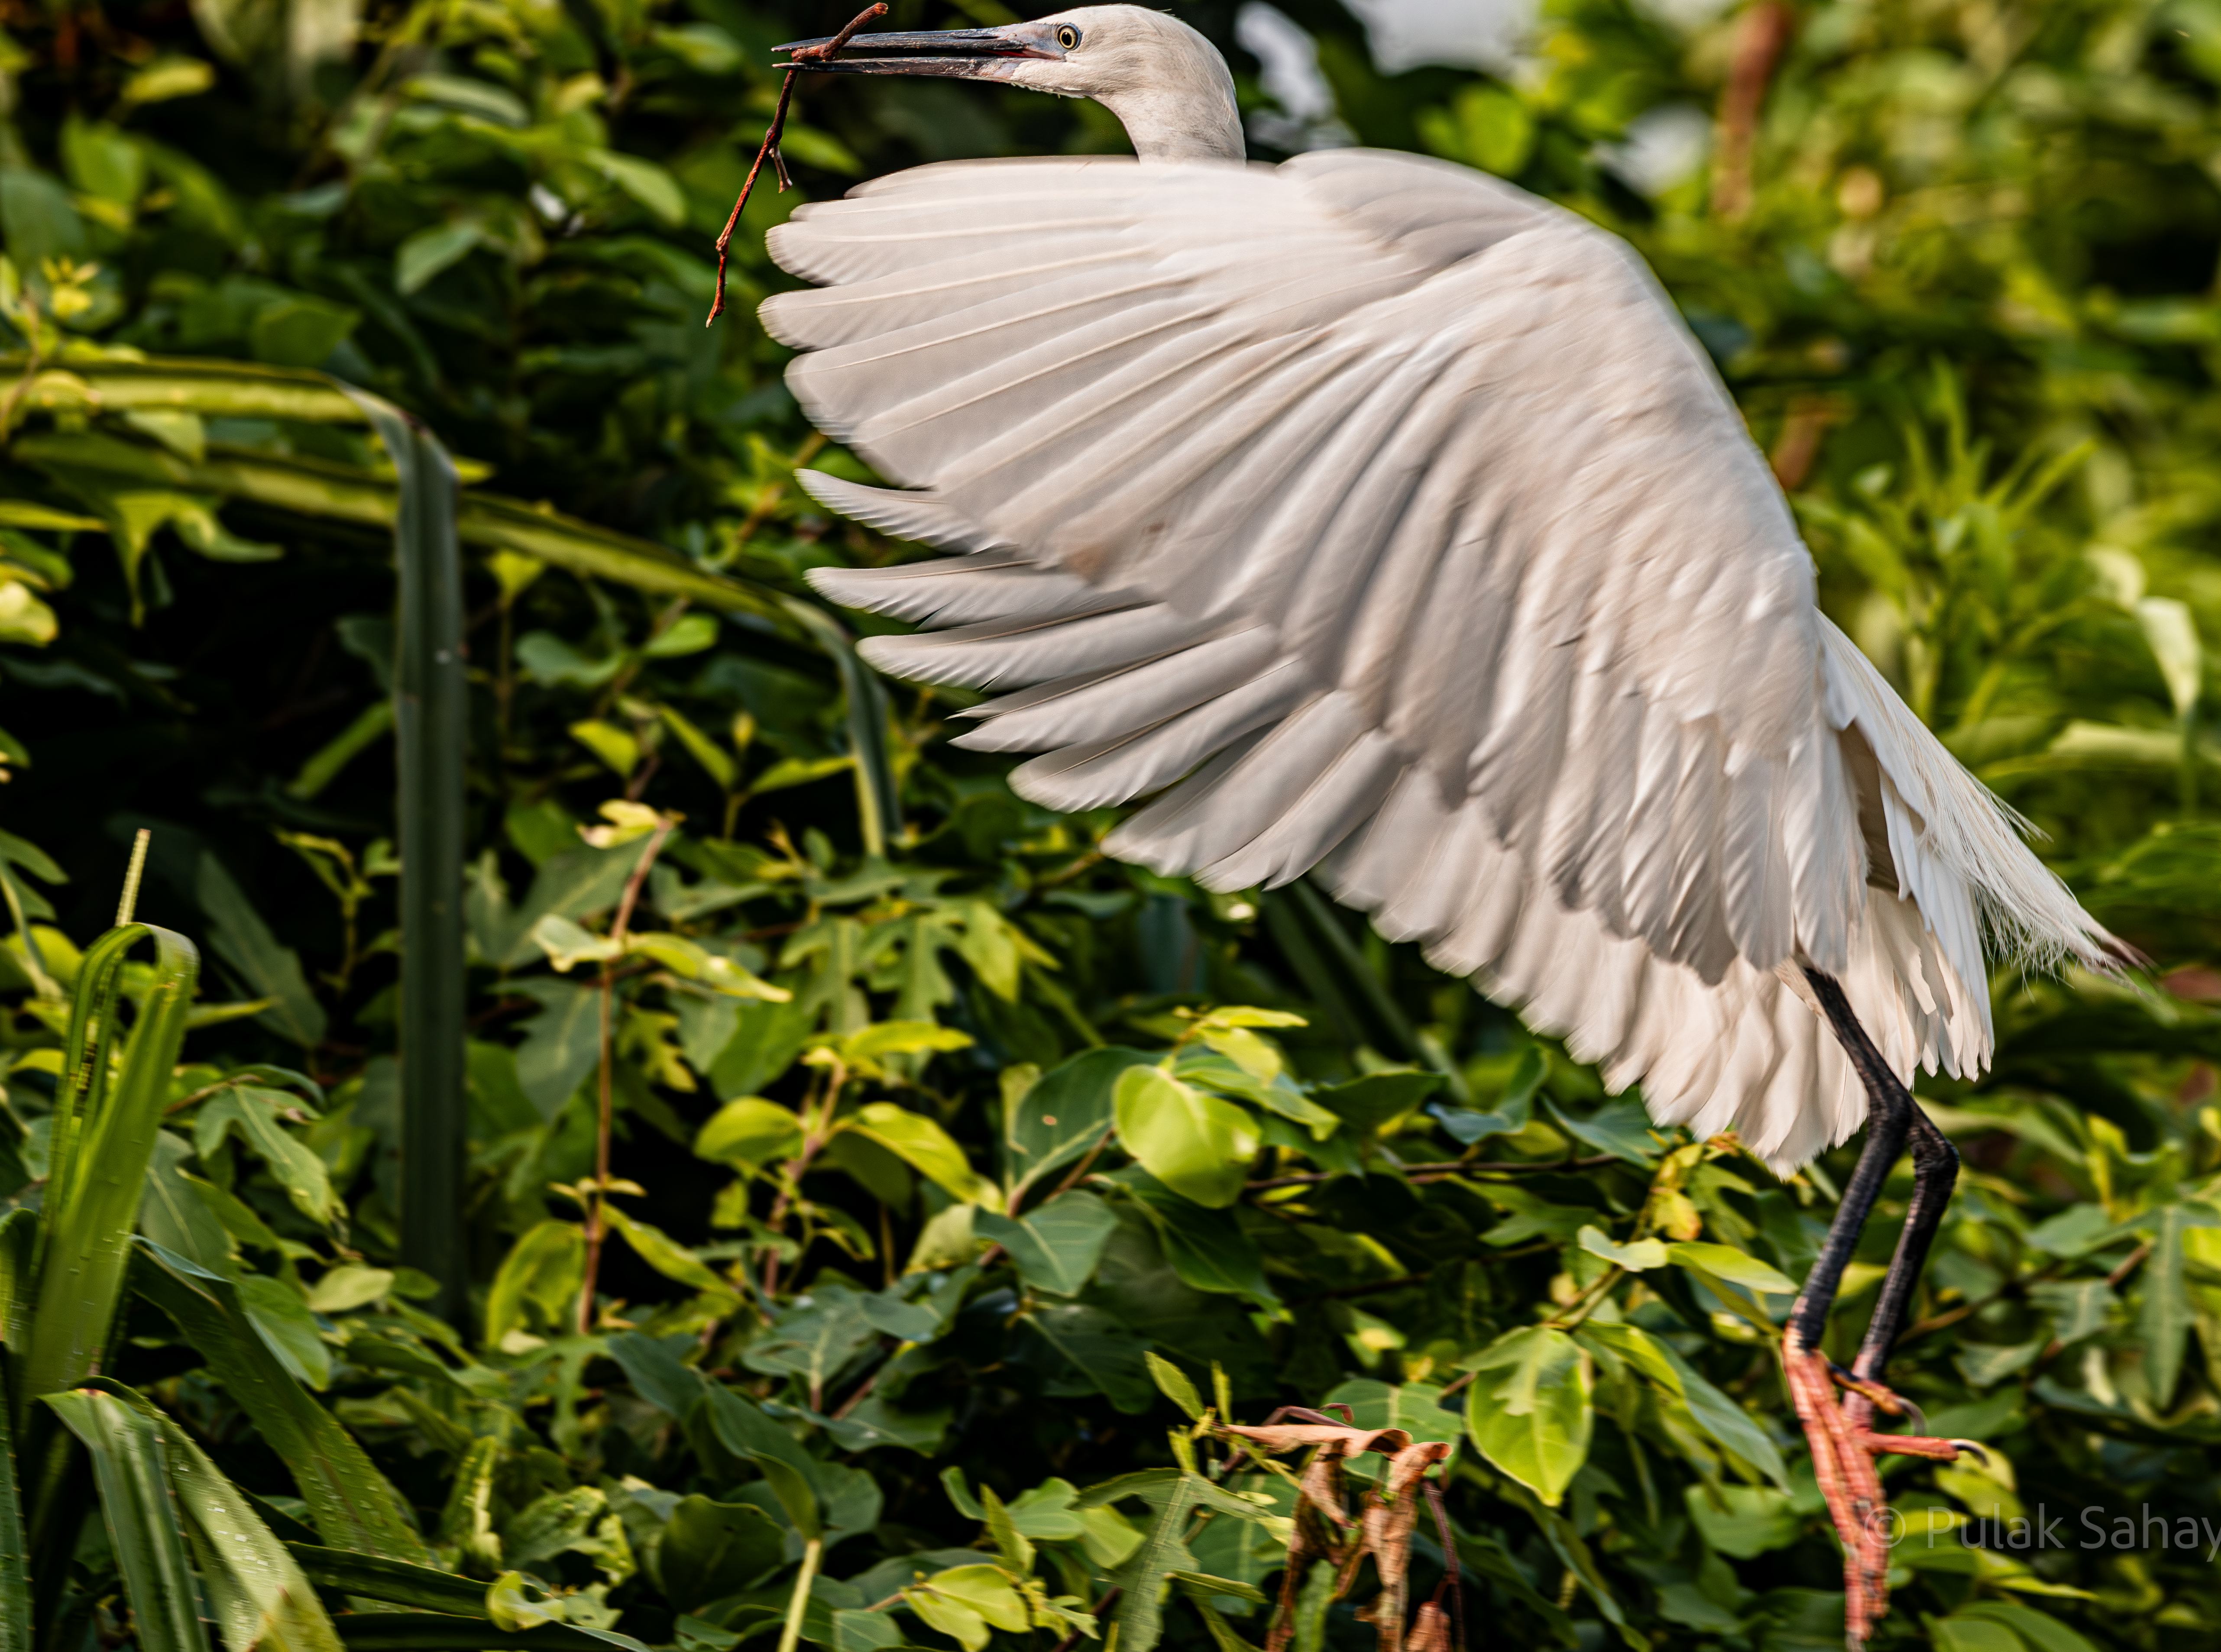 Heron landing with twig